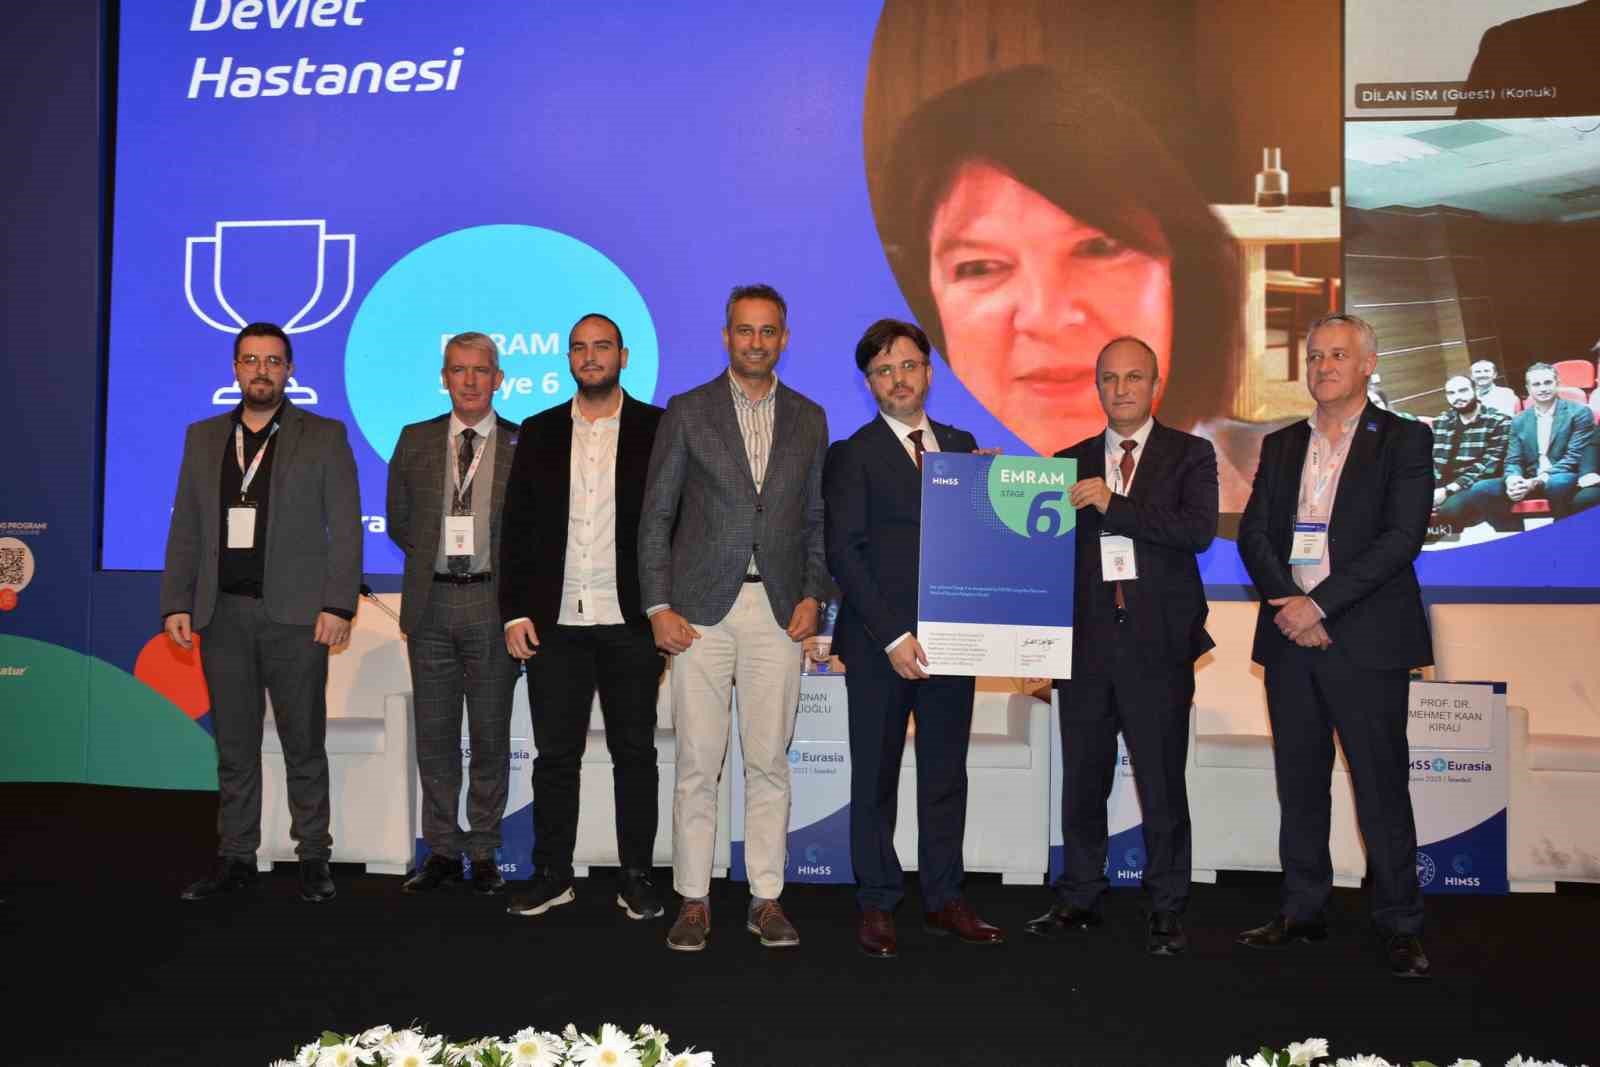 Kuşadası Devlet Hastanesi, Dijital Hastane Ödülü’nü aldı
